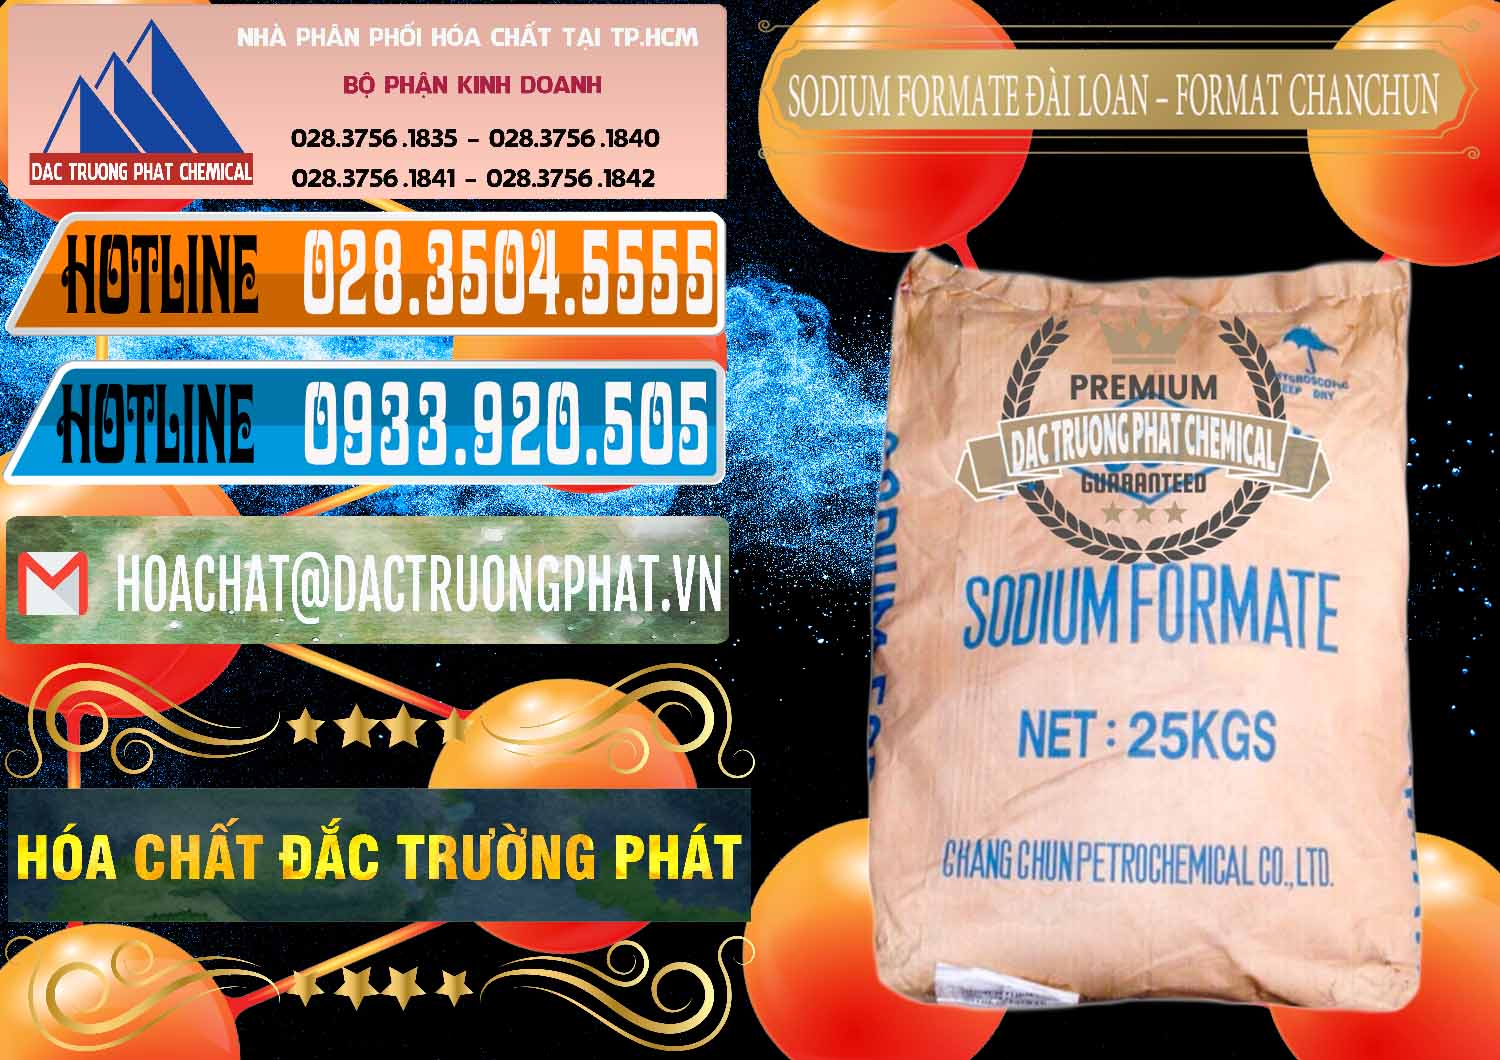 Cung cấp - bán Sodium Formate - Natri Format Đài Loan Taiwan - 0141 - Nhà phân phối và cung cấp hóa chất tại TP.HCM - stmp.net